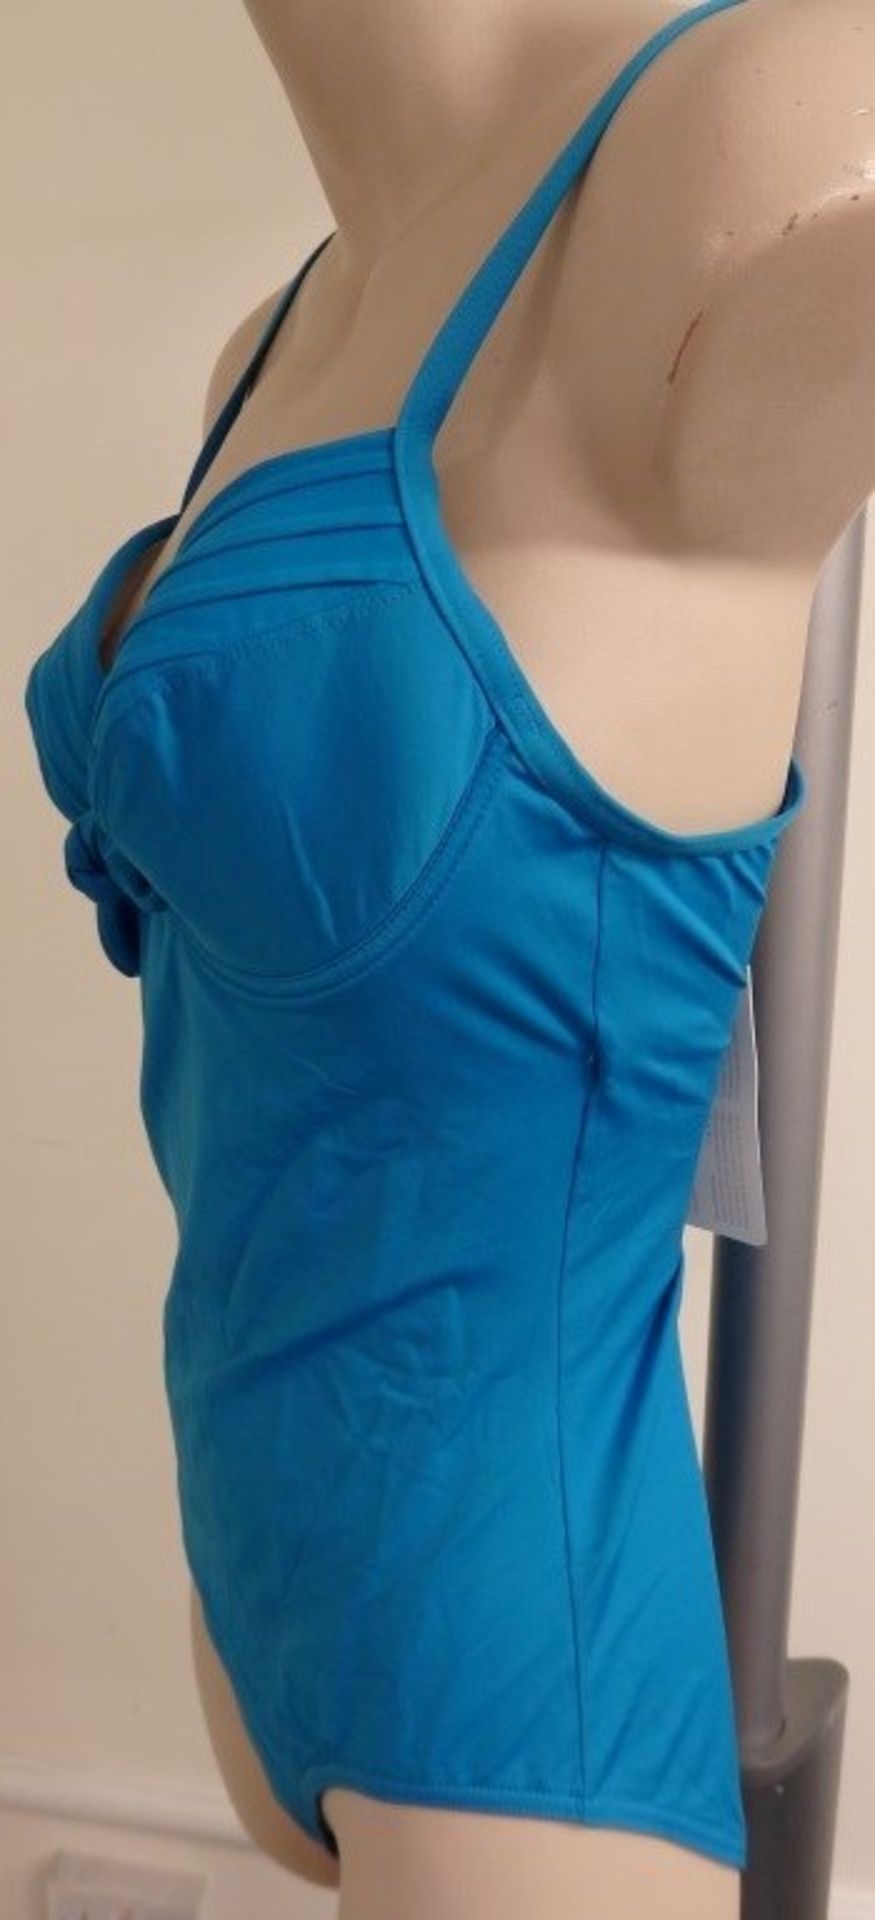 1 x Rasurel - Turquoise -Touquet balconnet Swimsuit - R20232 - Size 2C - UK 32 - Fr 85 - EU/Int 70 - - Image 9 of 9